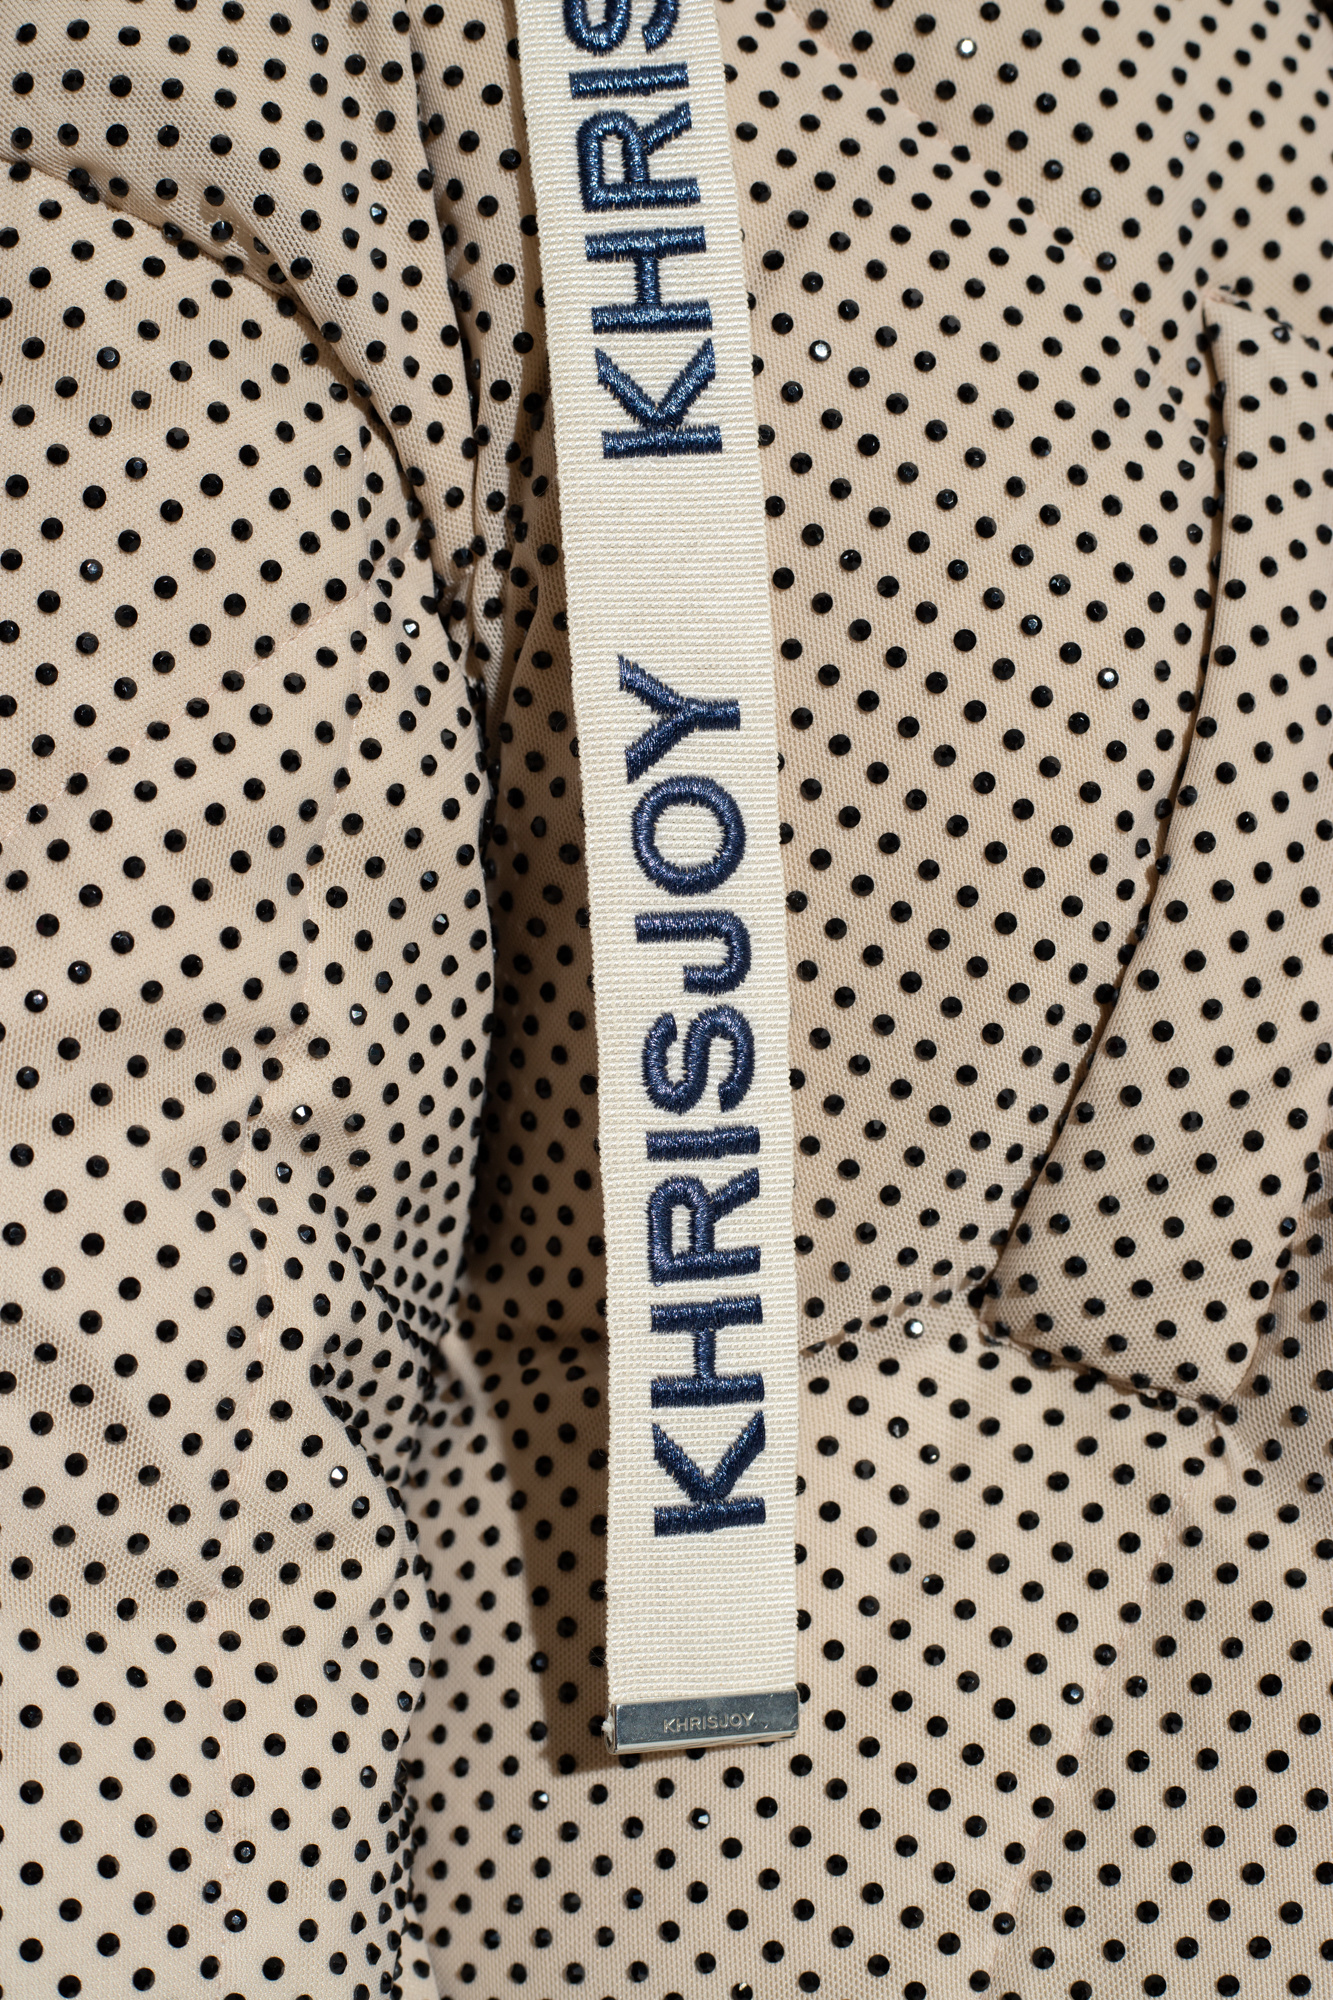 Khrisjoy Crystal-embellished Lee jacket